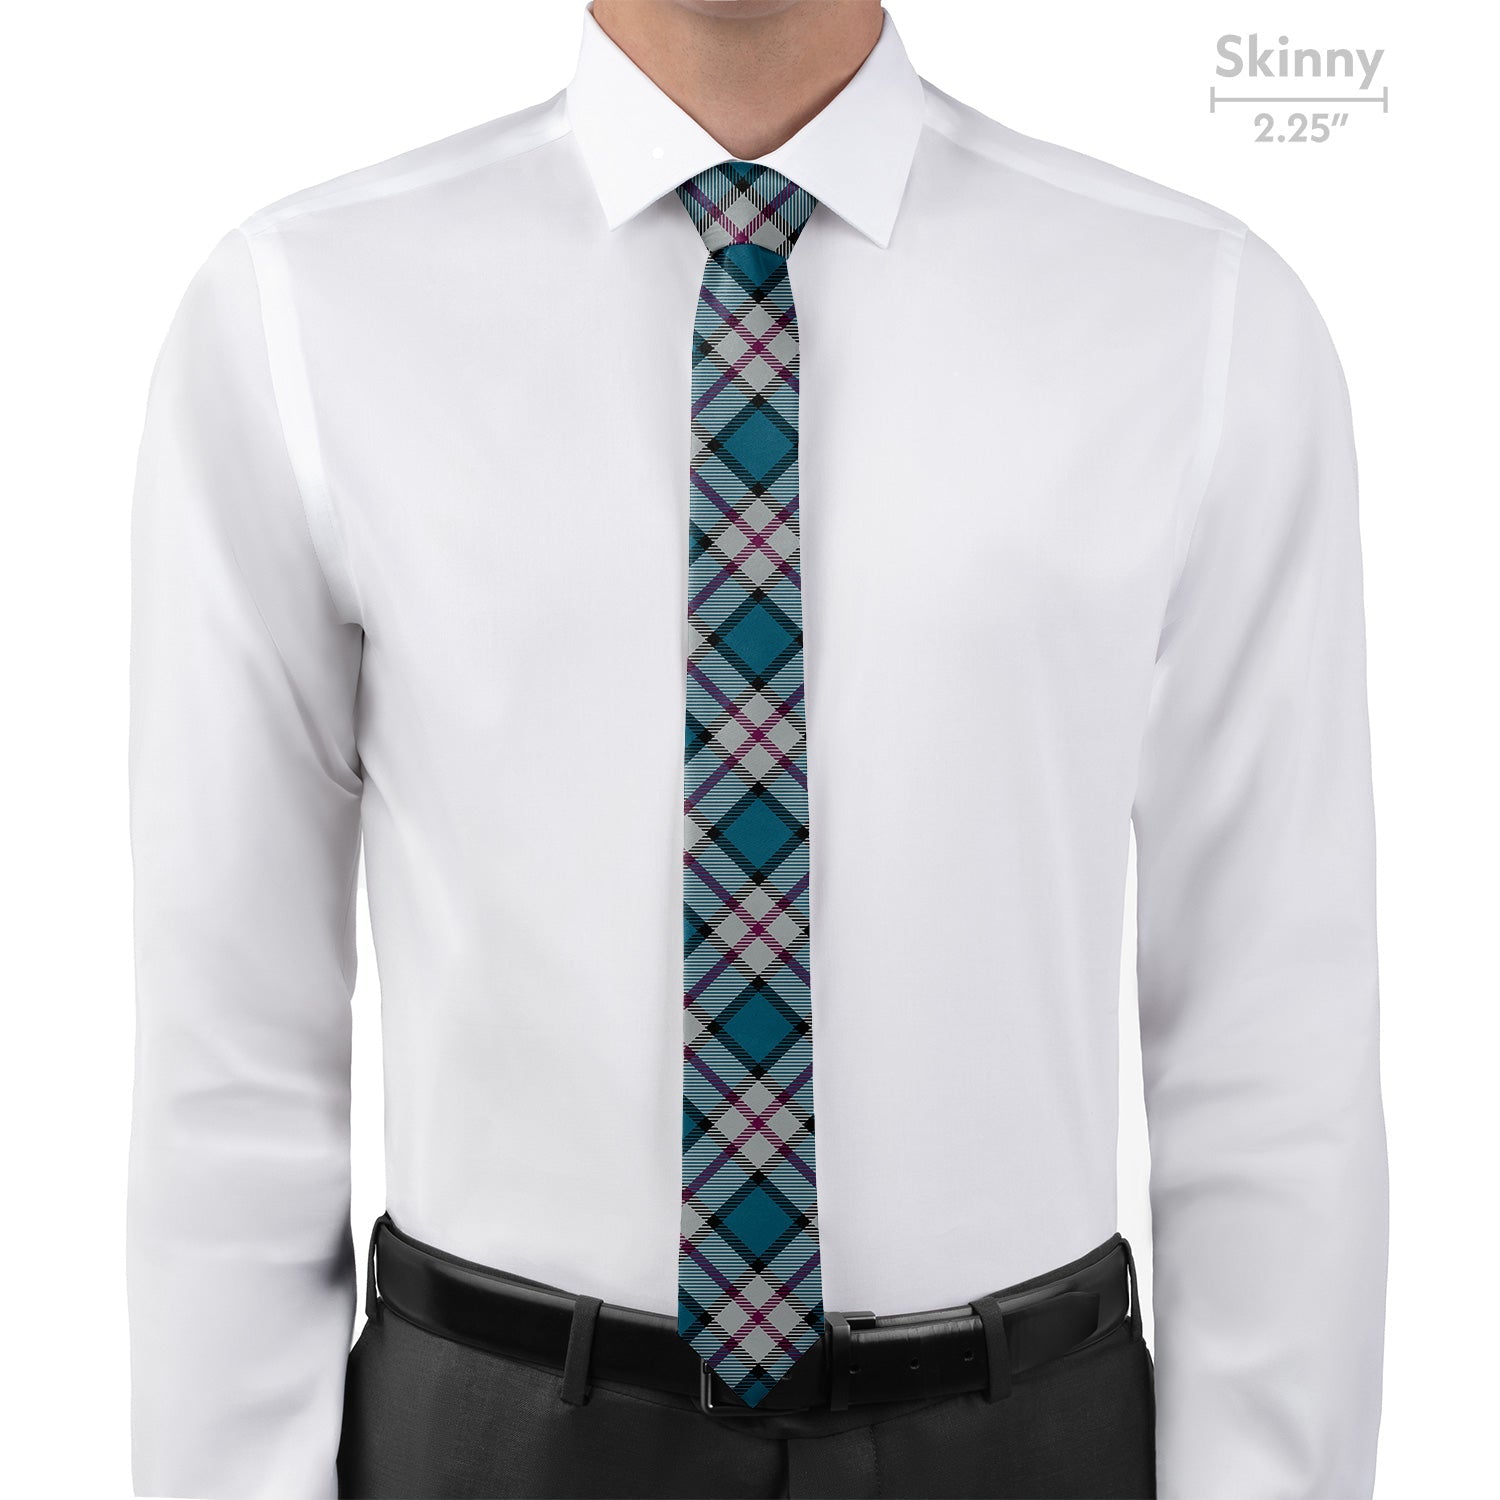 Harrison Plaid Necktie - Skinny - Knotty Tie Co.